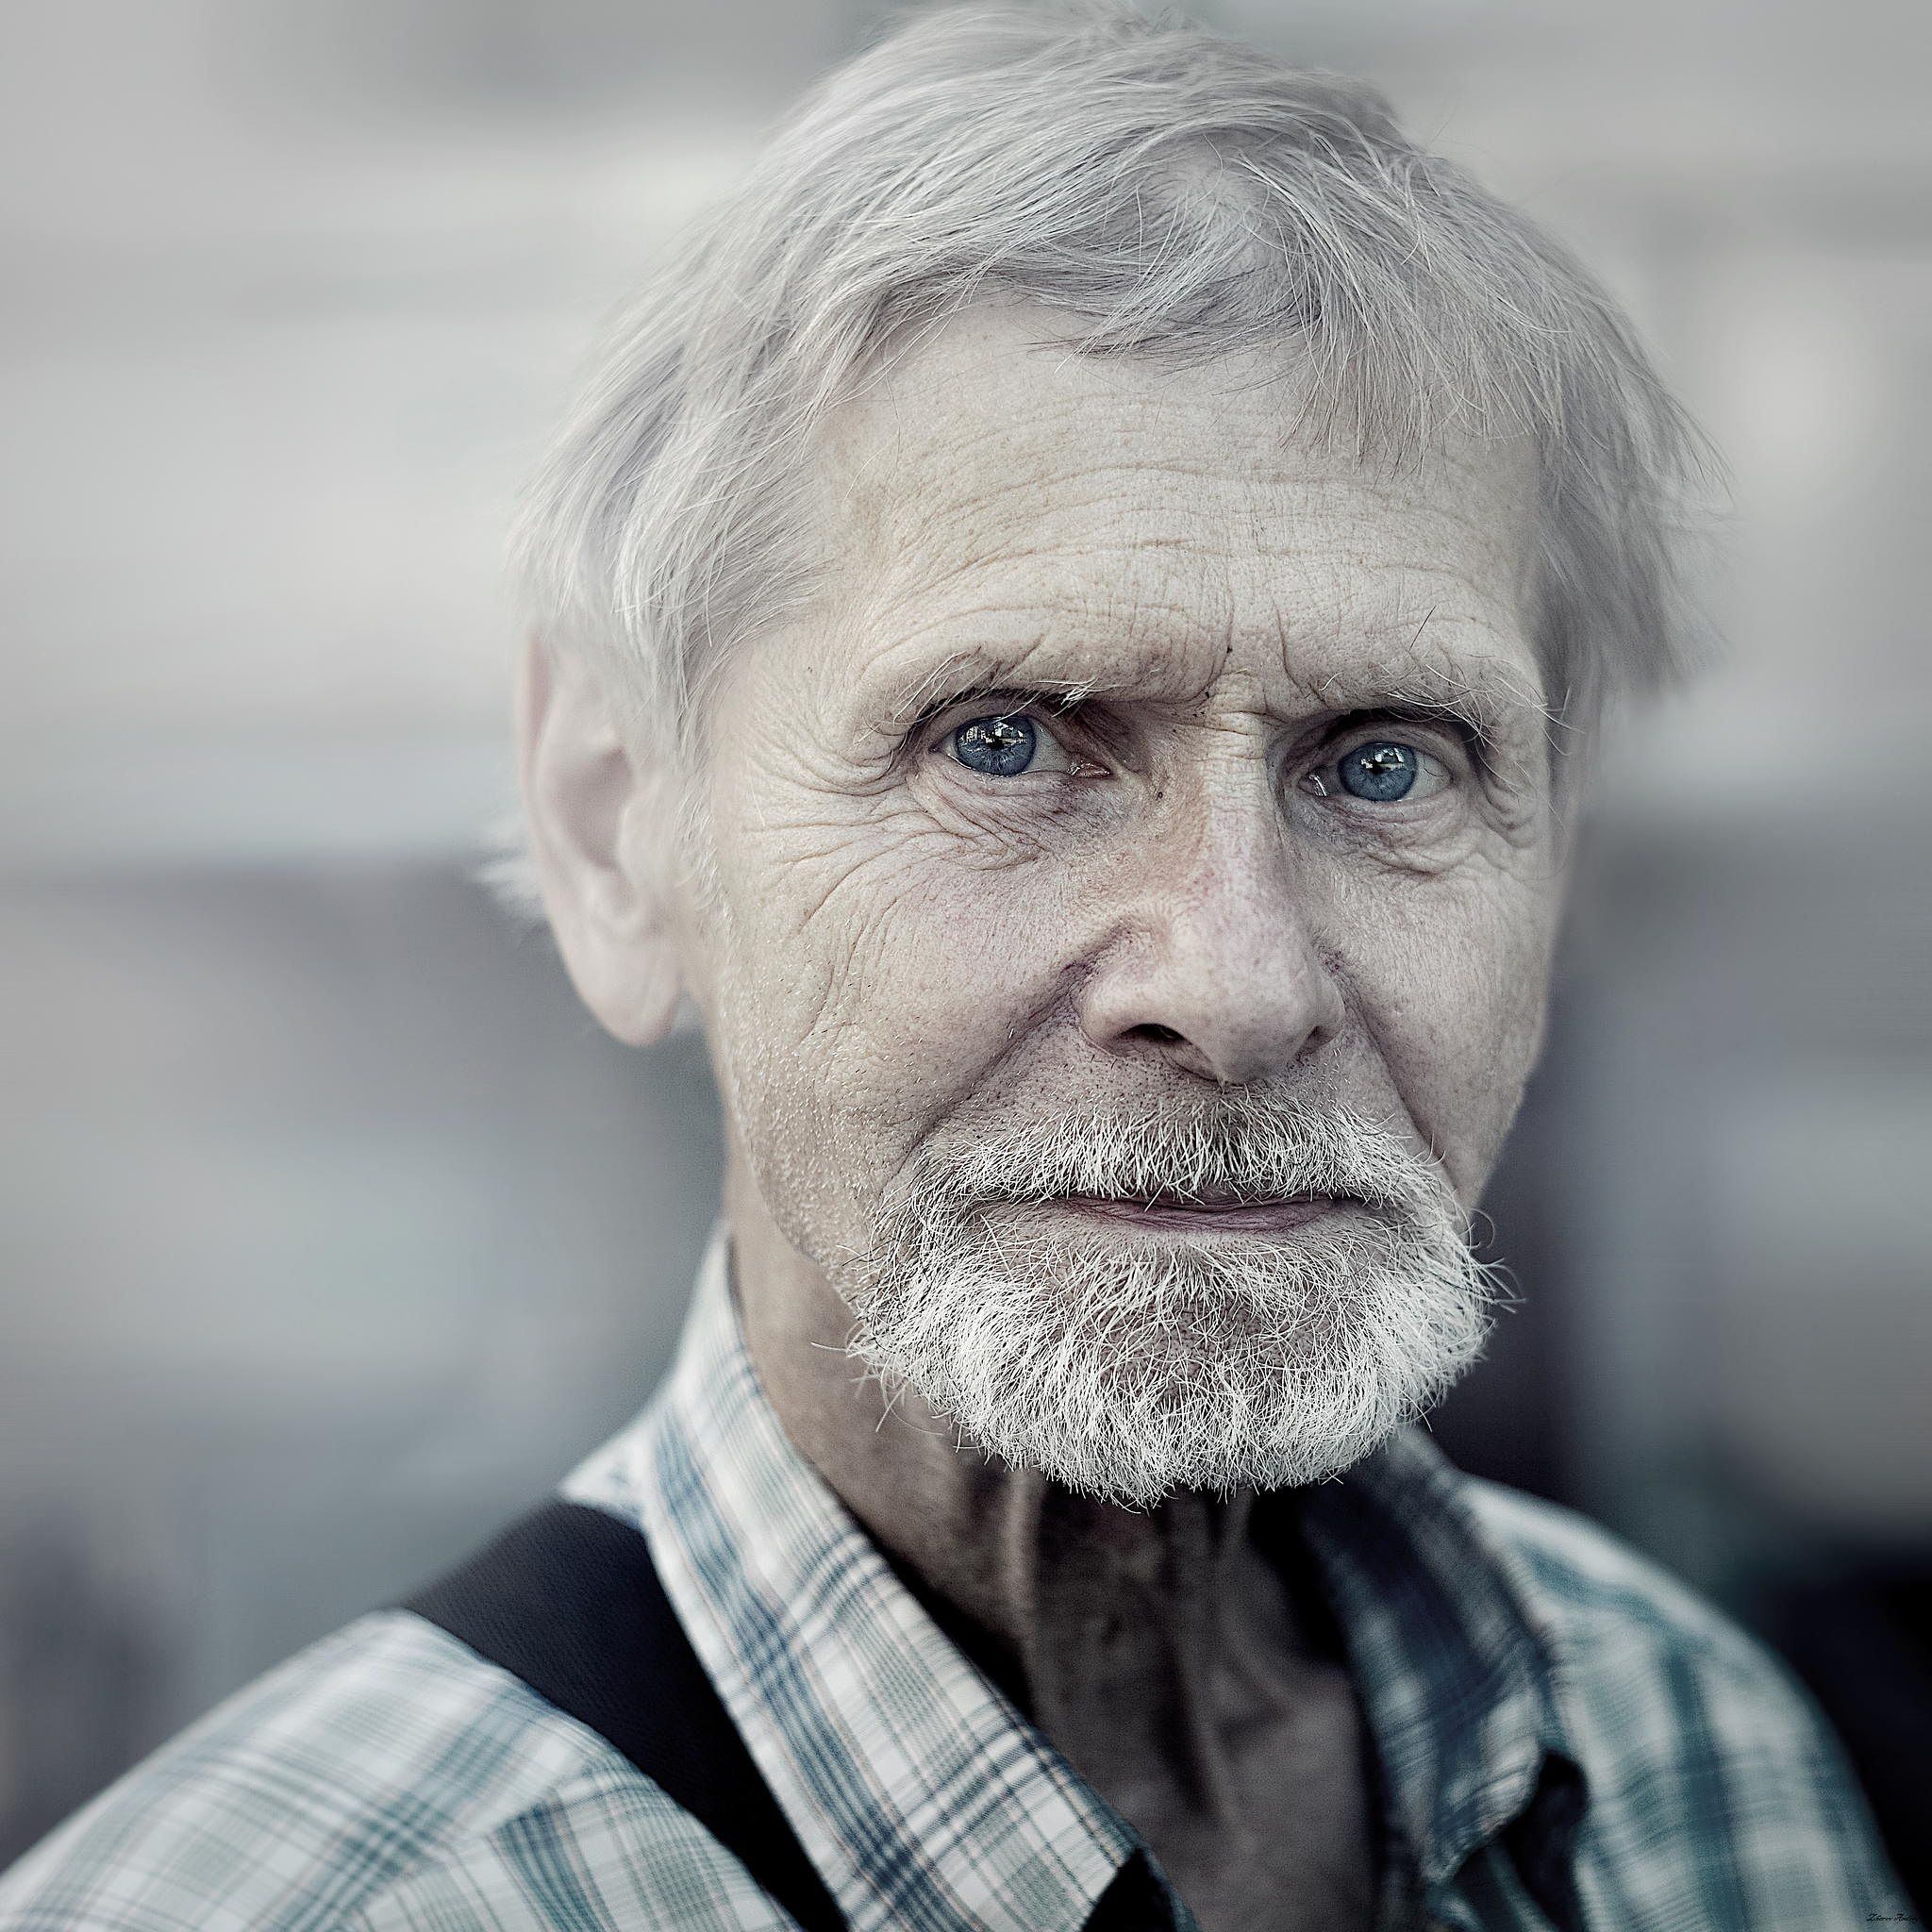 Пожилой мужчина москва. Фотопортрет старика. Пожилой мужчина. Портрет пожилого мужчины. Фотопортрет пожилого человека.